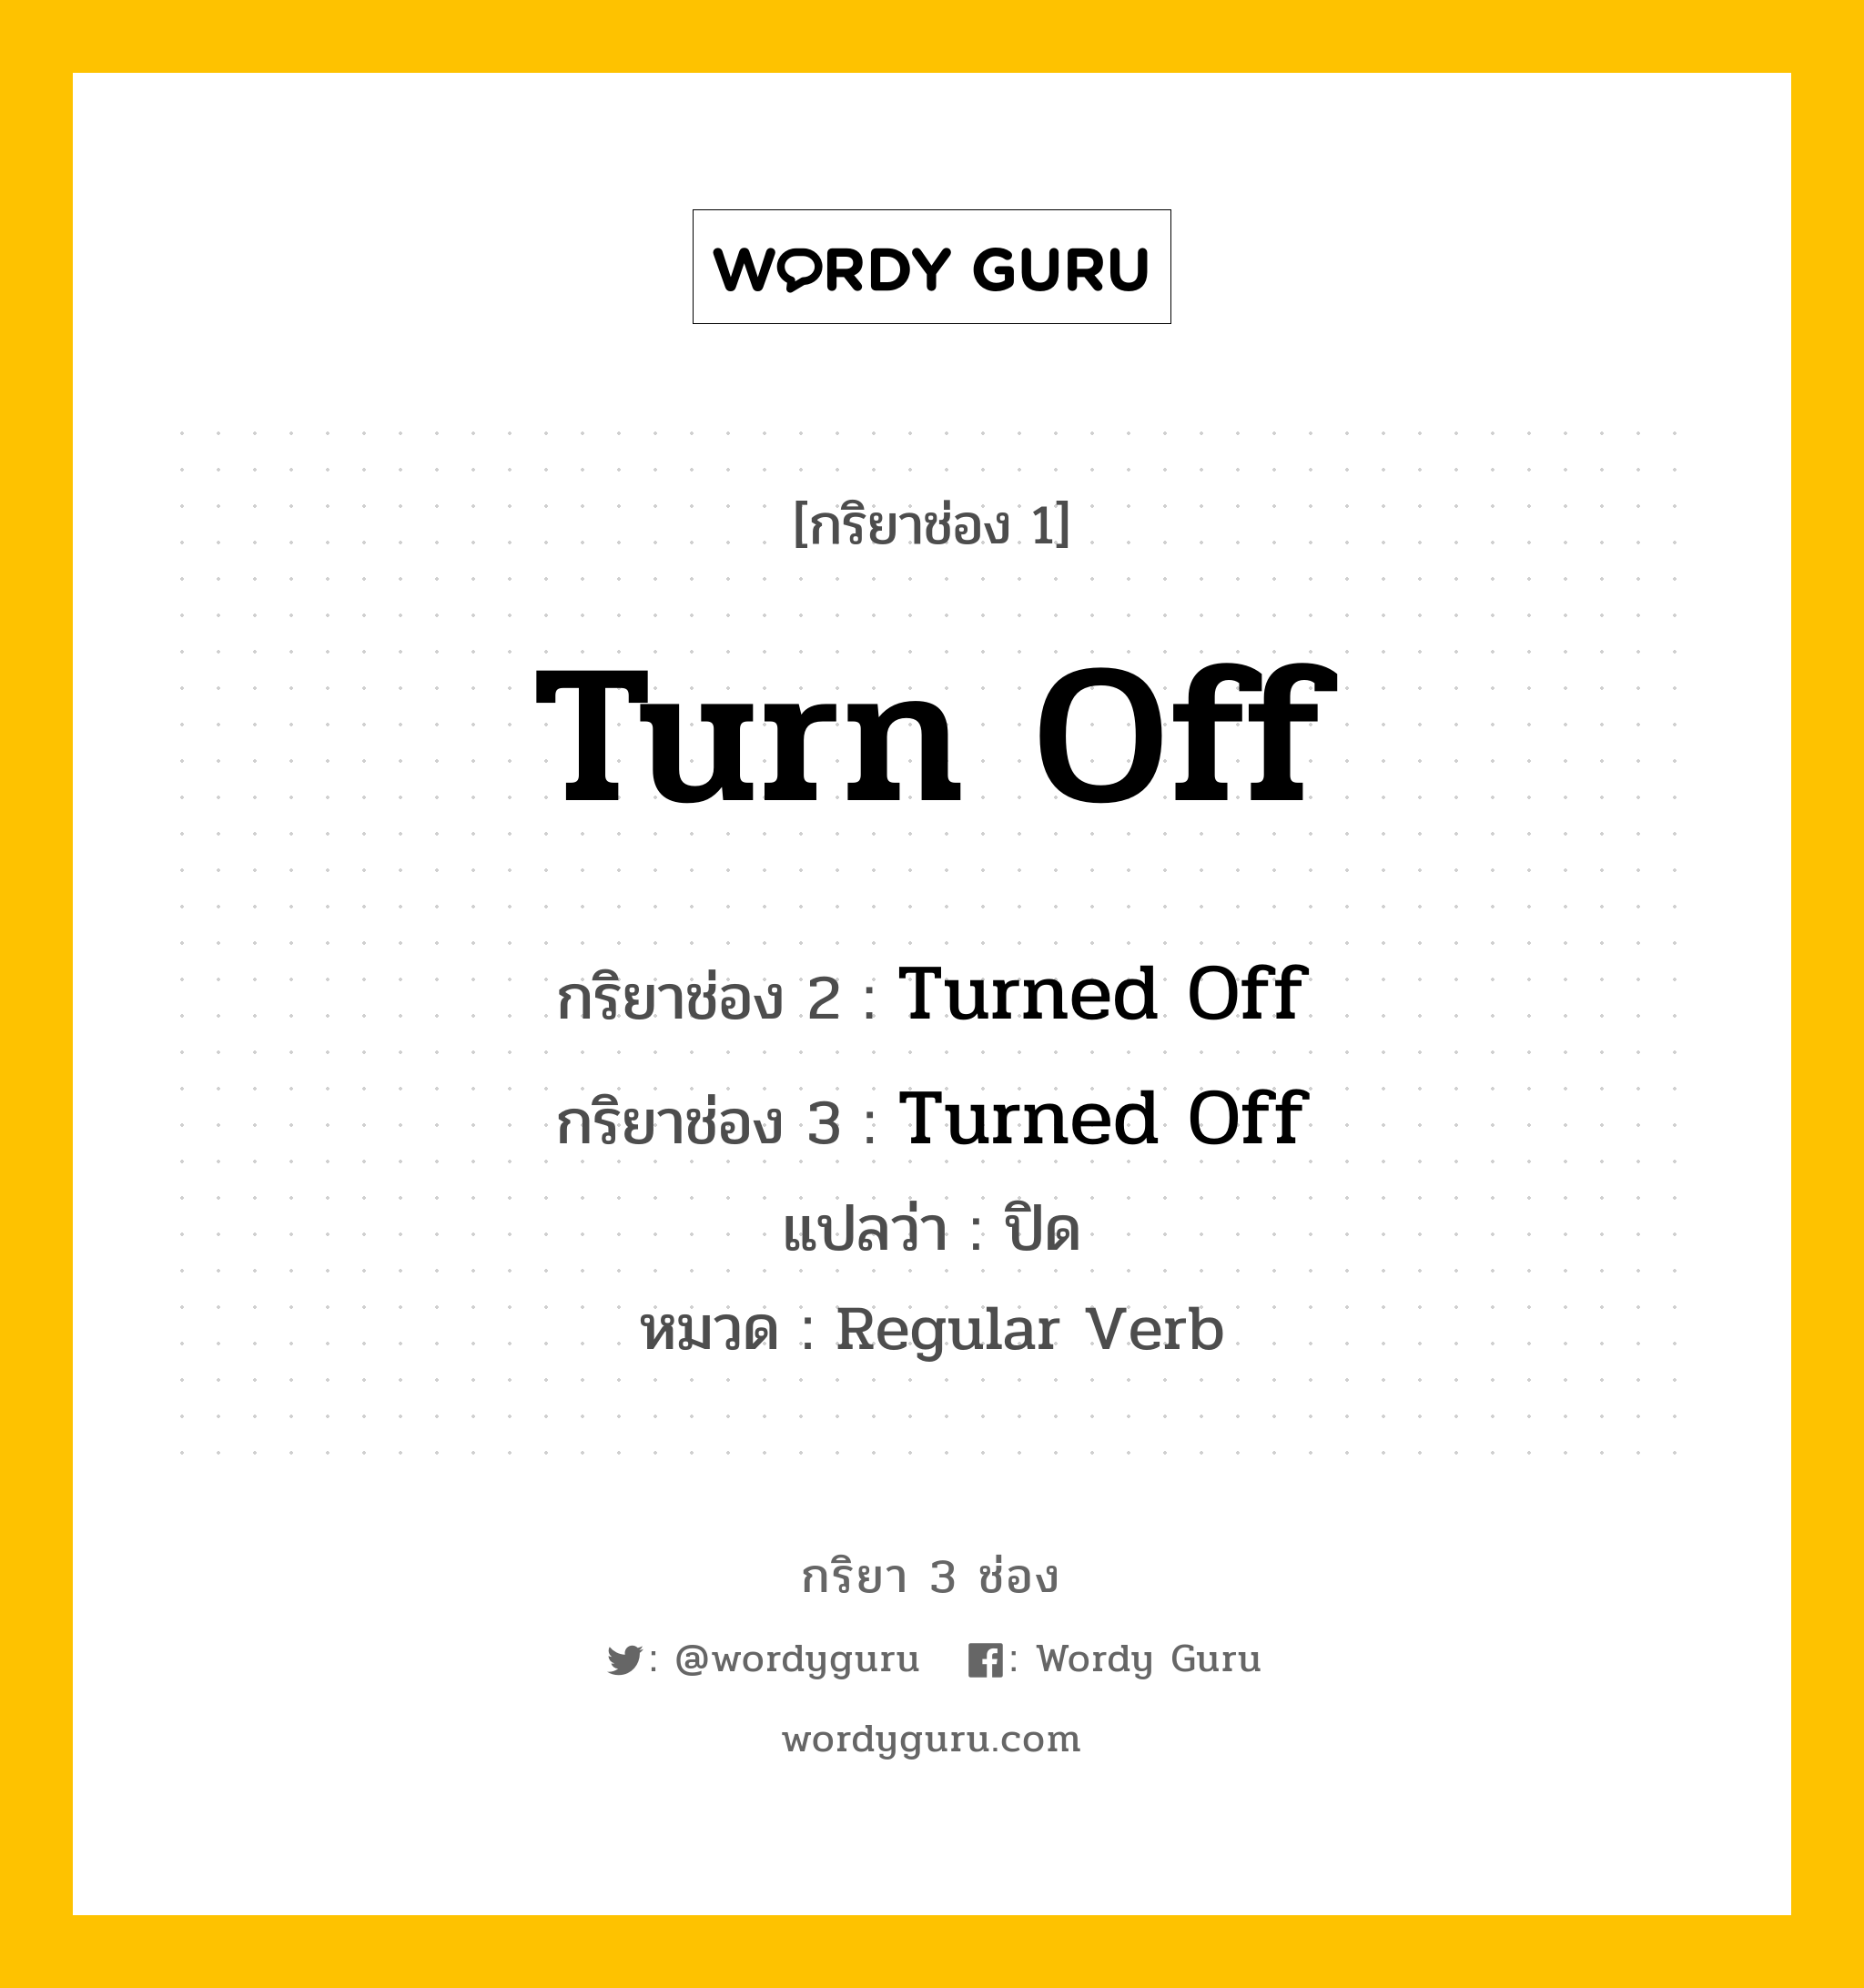 กริยา 3 ช่อง: Turn Off ช่อง 2 Turn Off ช่อง 3 คืออะไร, กริยาช่อง 1 Turn Off กริยาช่อง 2 Turned Off กริยาช่อง 3 Turned Off แปลว่า ปิด หมวด Regular Verb หมวด Regular Verb